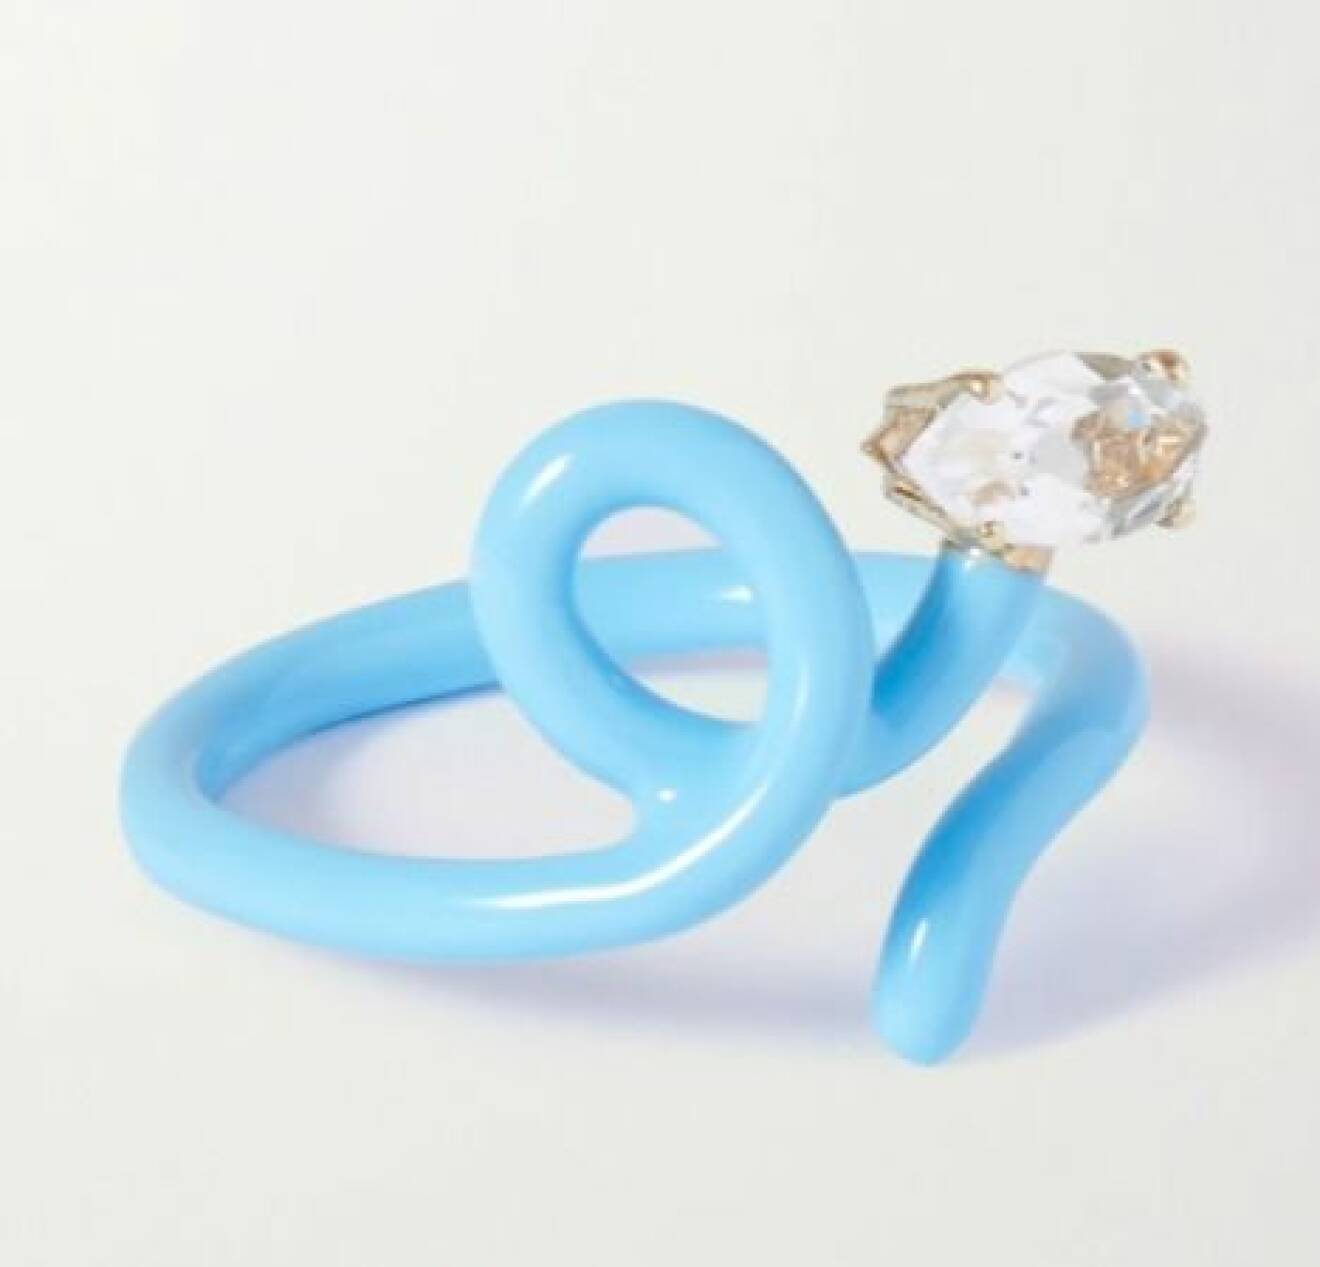 Ring i ljusblå plast i med vit sten framtill. Ring från Bea Bongiasca/Net-a-porter.